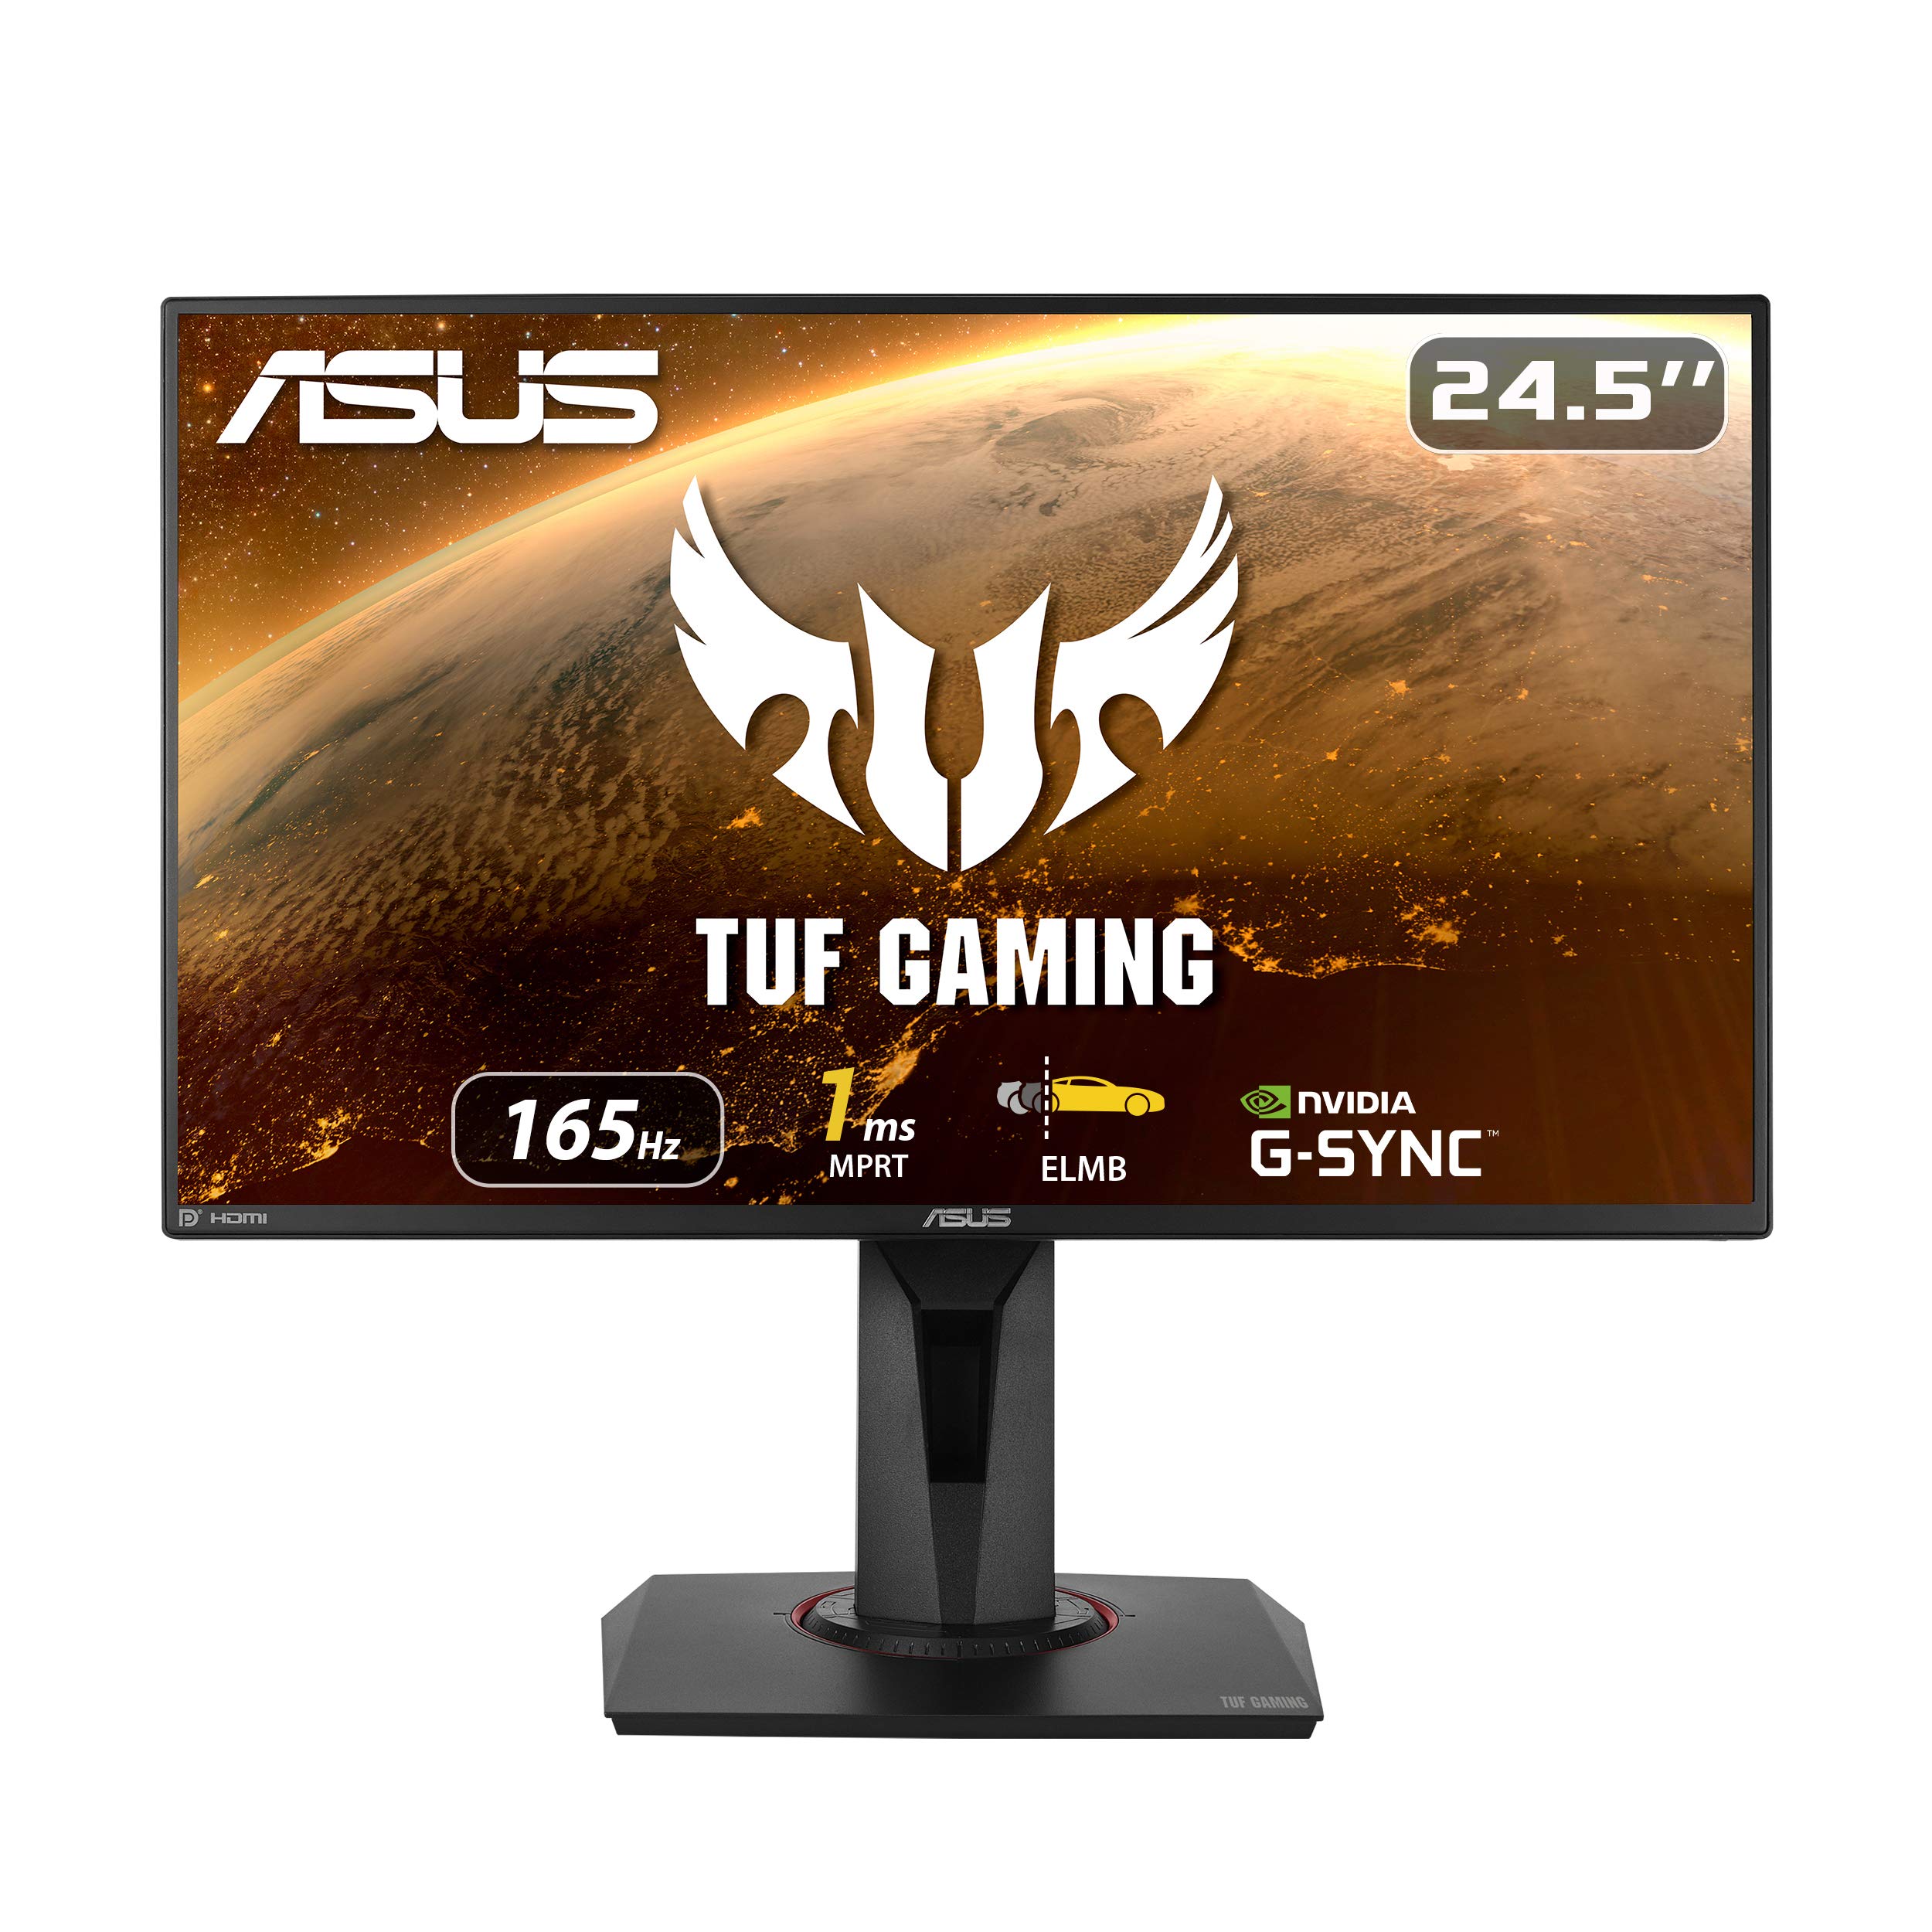  Asus TUF Gaming VG259QR 24.5 ゲーミングモニター、1080P フル HD、165Hz (144Hz をサポート)、1ms、超低モーションブラー、G-SYNC 互換対応、Eye Care、DisplayPort HDMI...